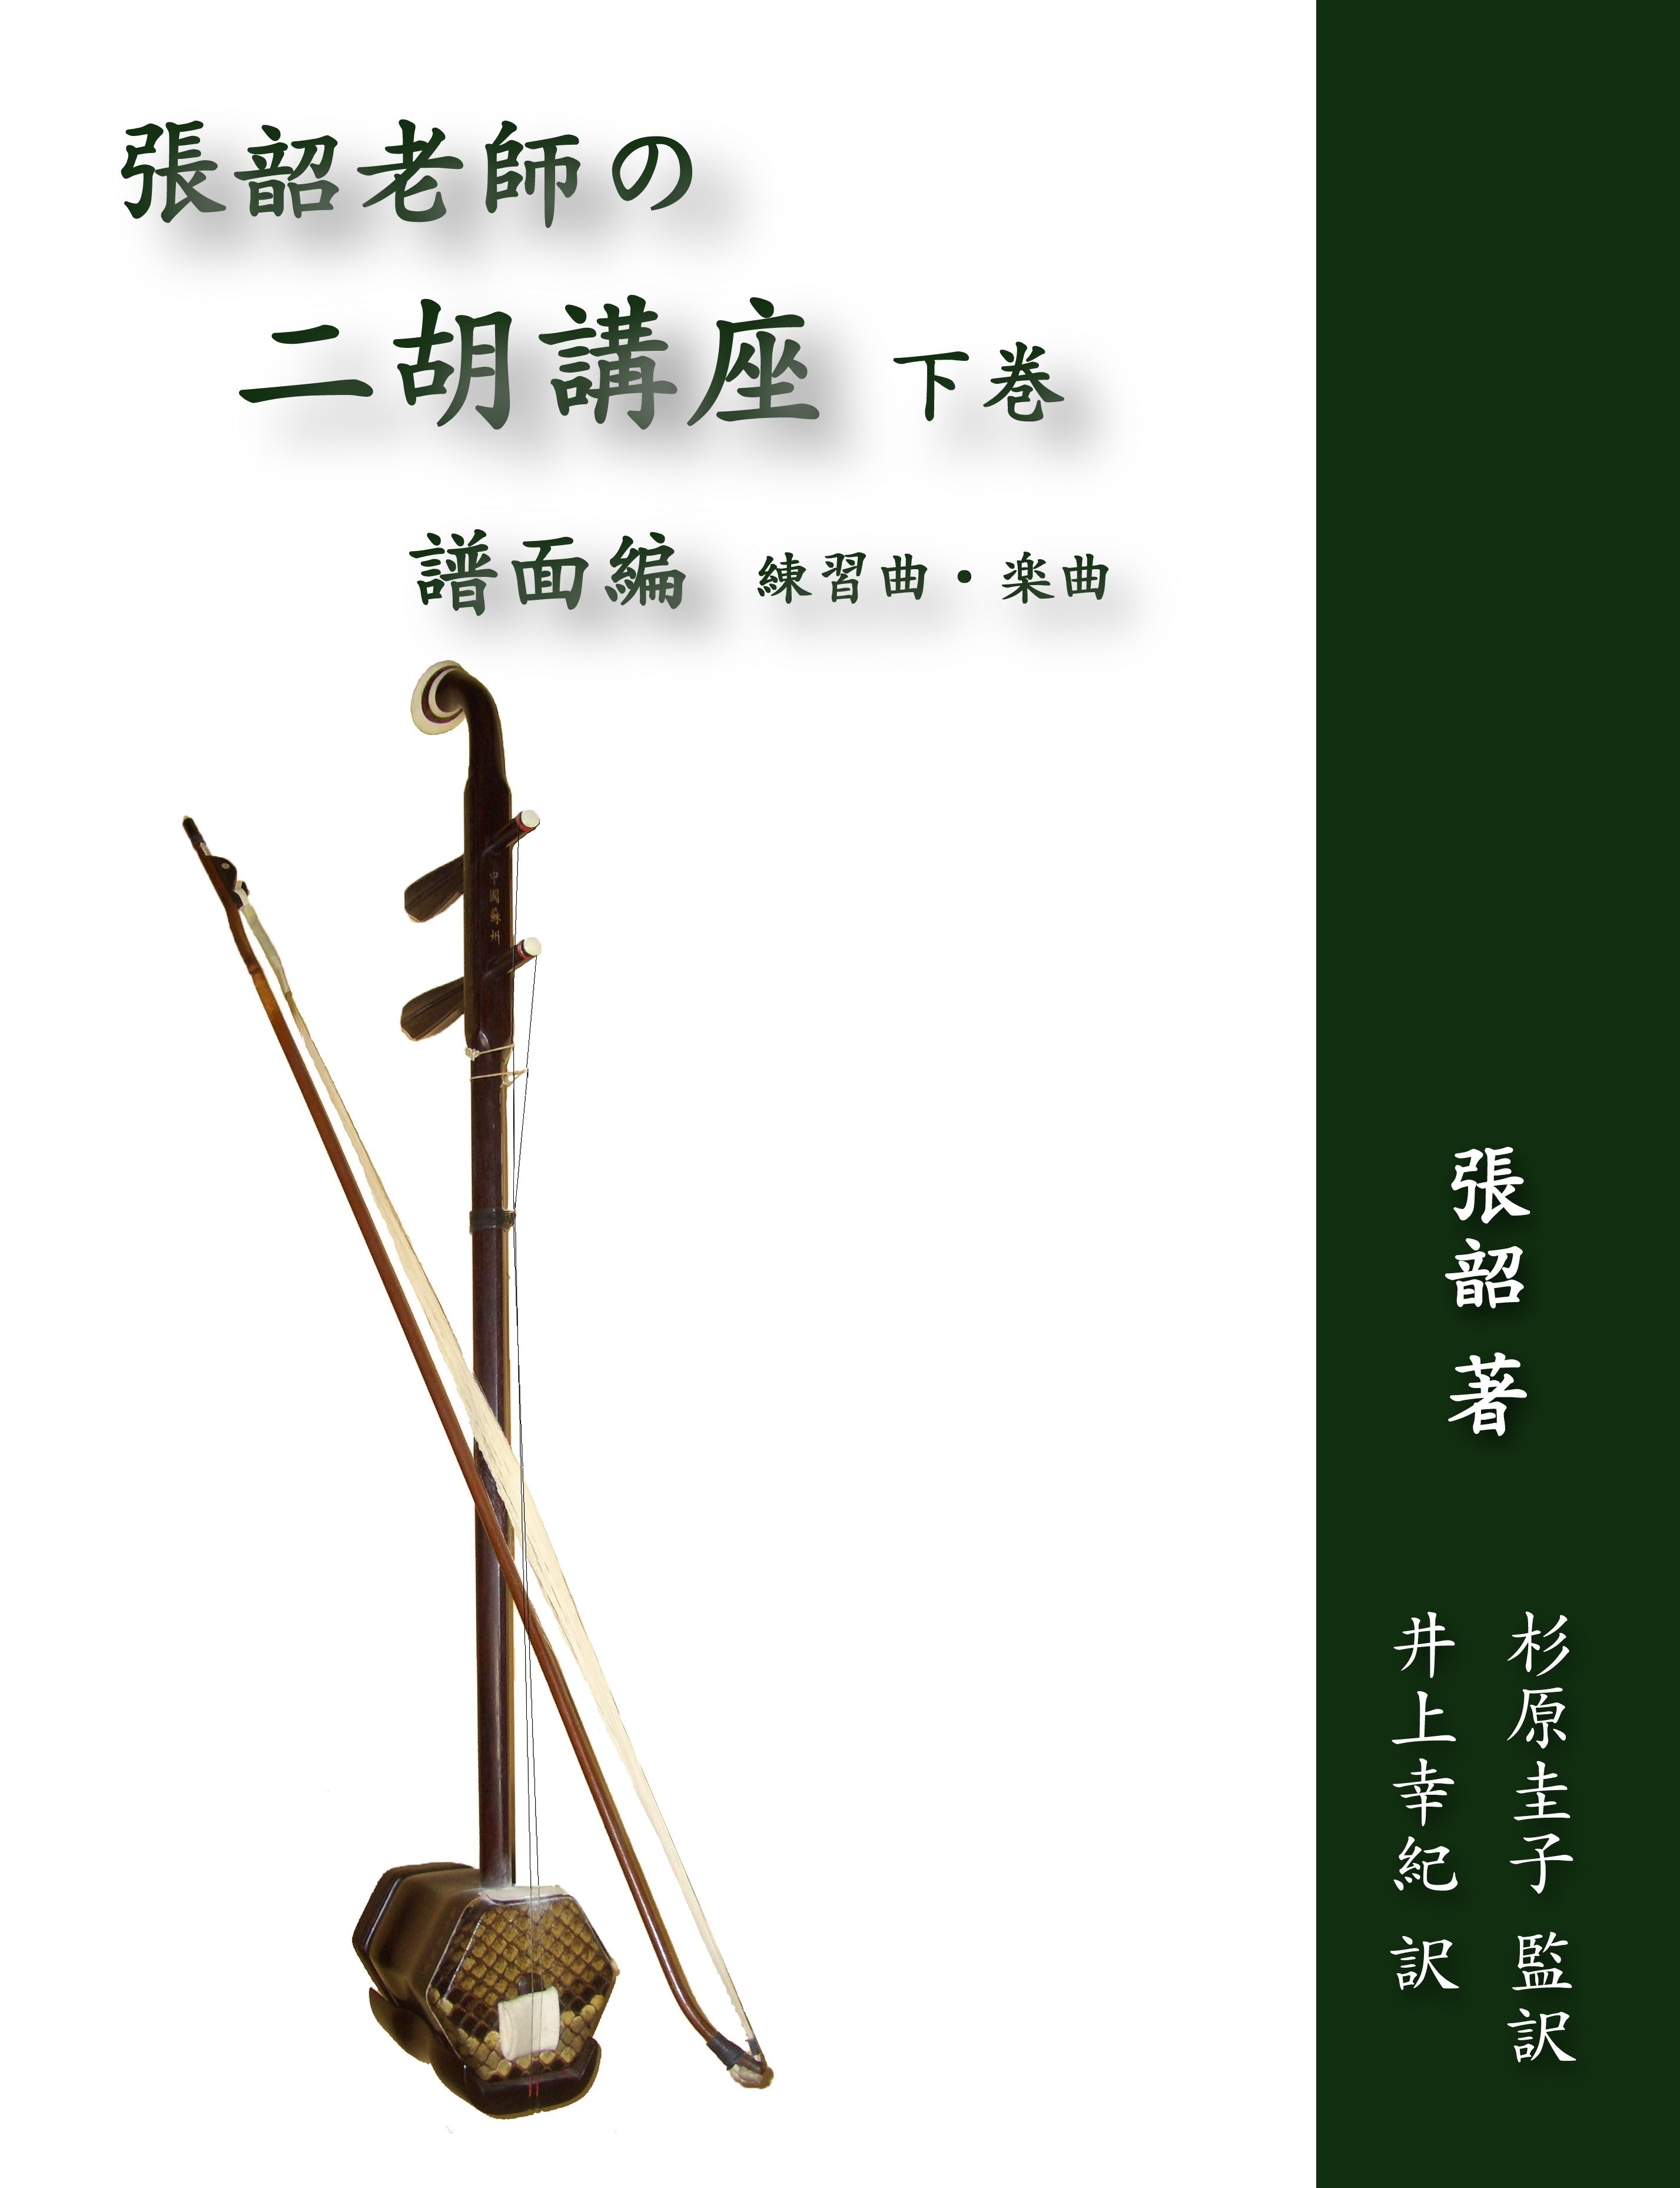 十三堂楽器 北京式黒檀二胡403P-